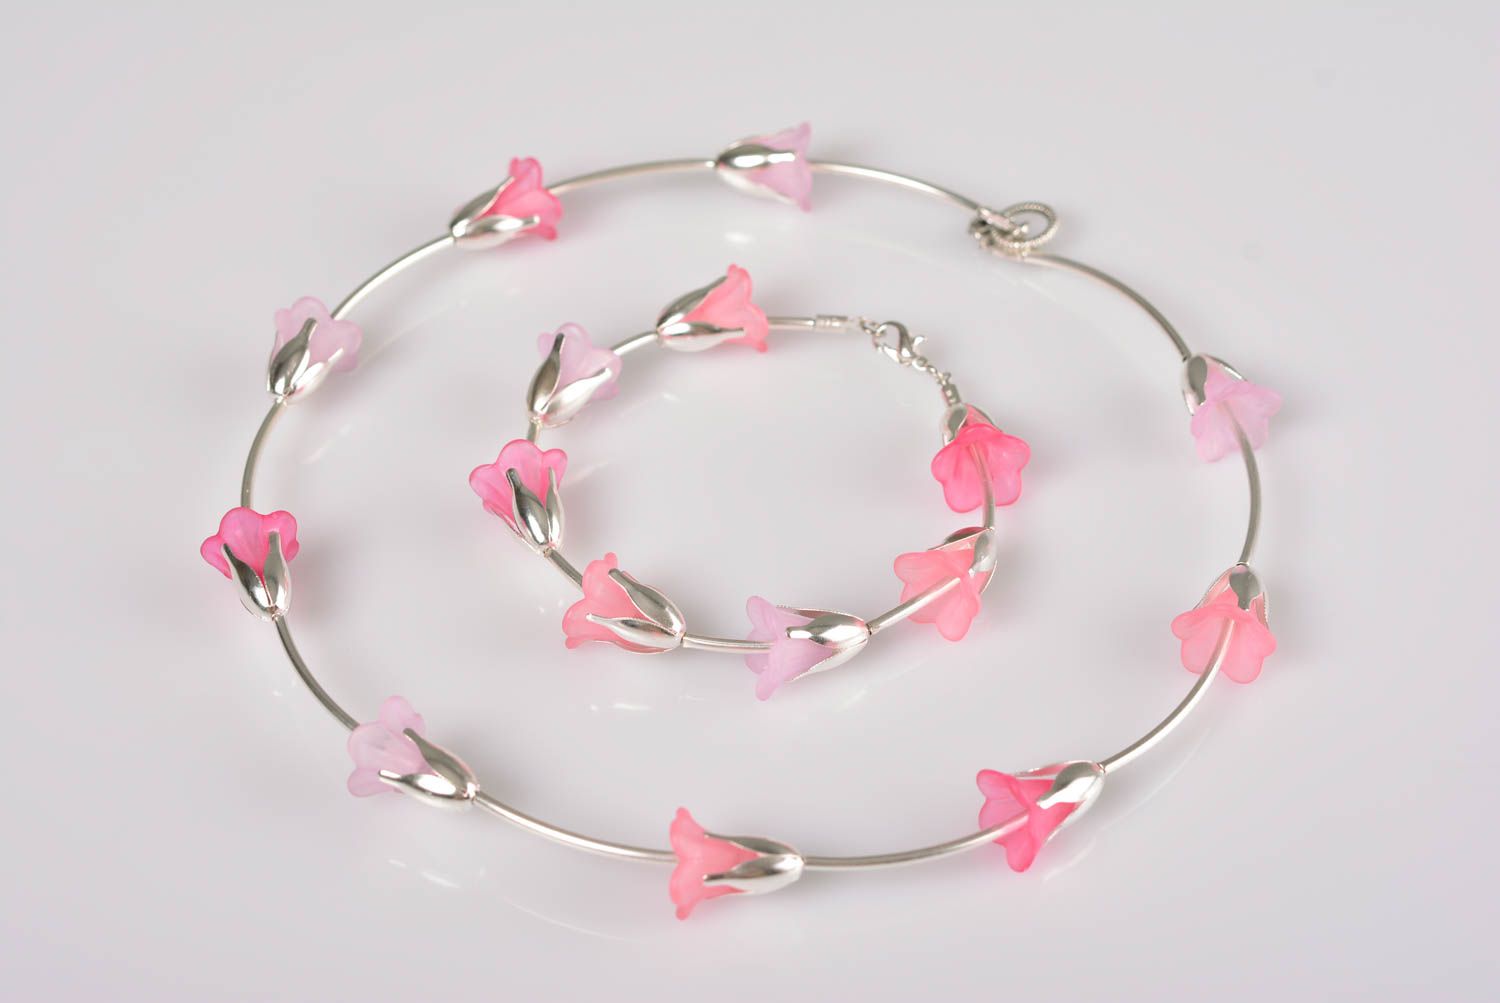 Украшения из пластика набор браслет и колье в виде розовых цветочков хэнд мэйд фото 1